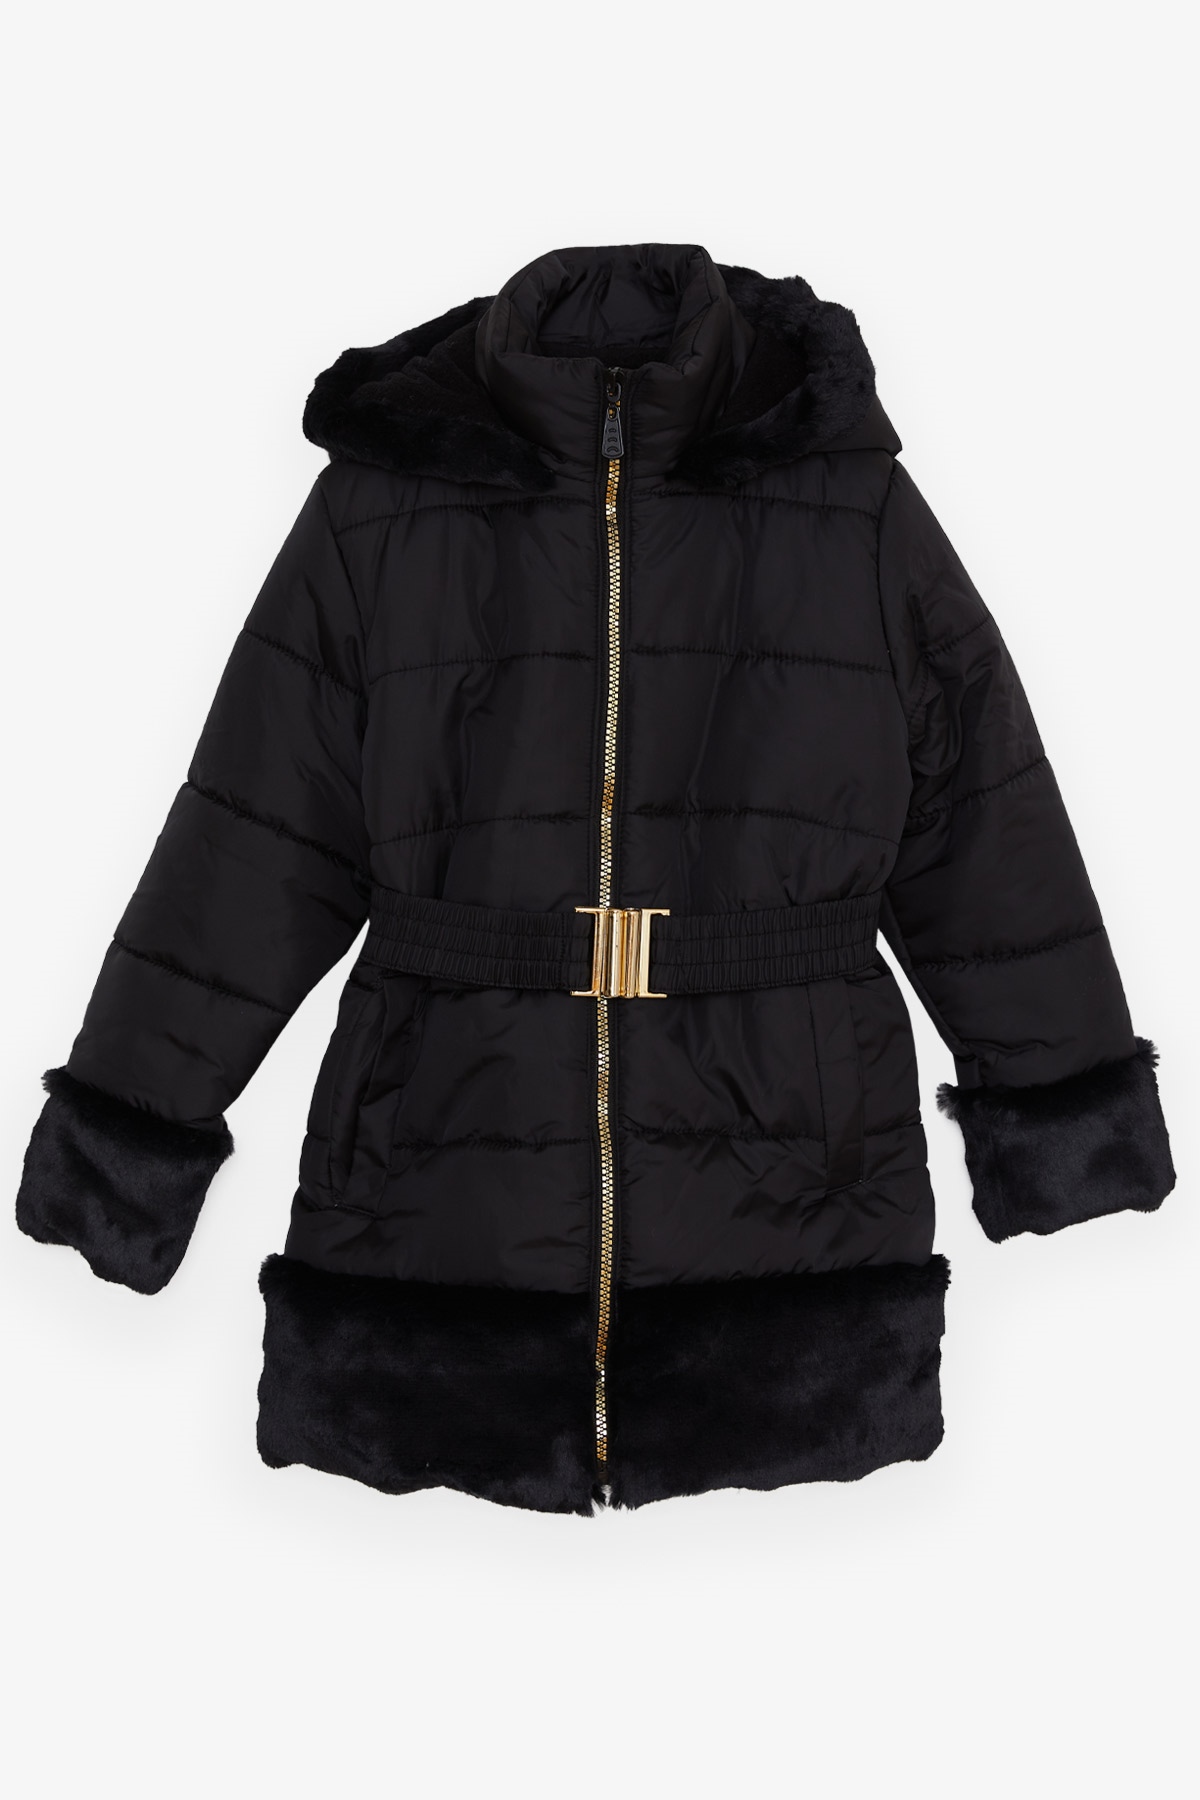 Kız Çocuk Mont Kürklü Kemer Detaylı Siyah 3 Yaş - Sıcacık Dış Giyim | Breeze